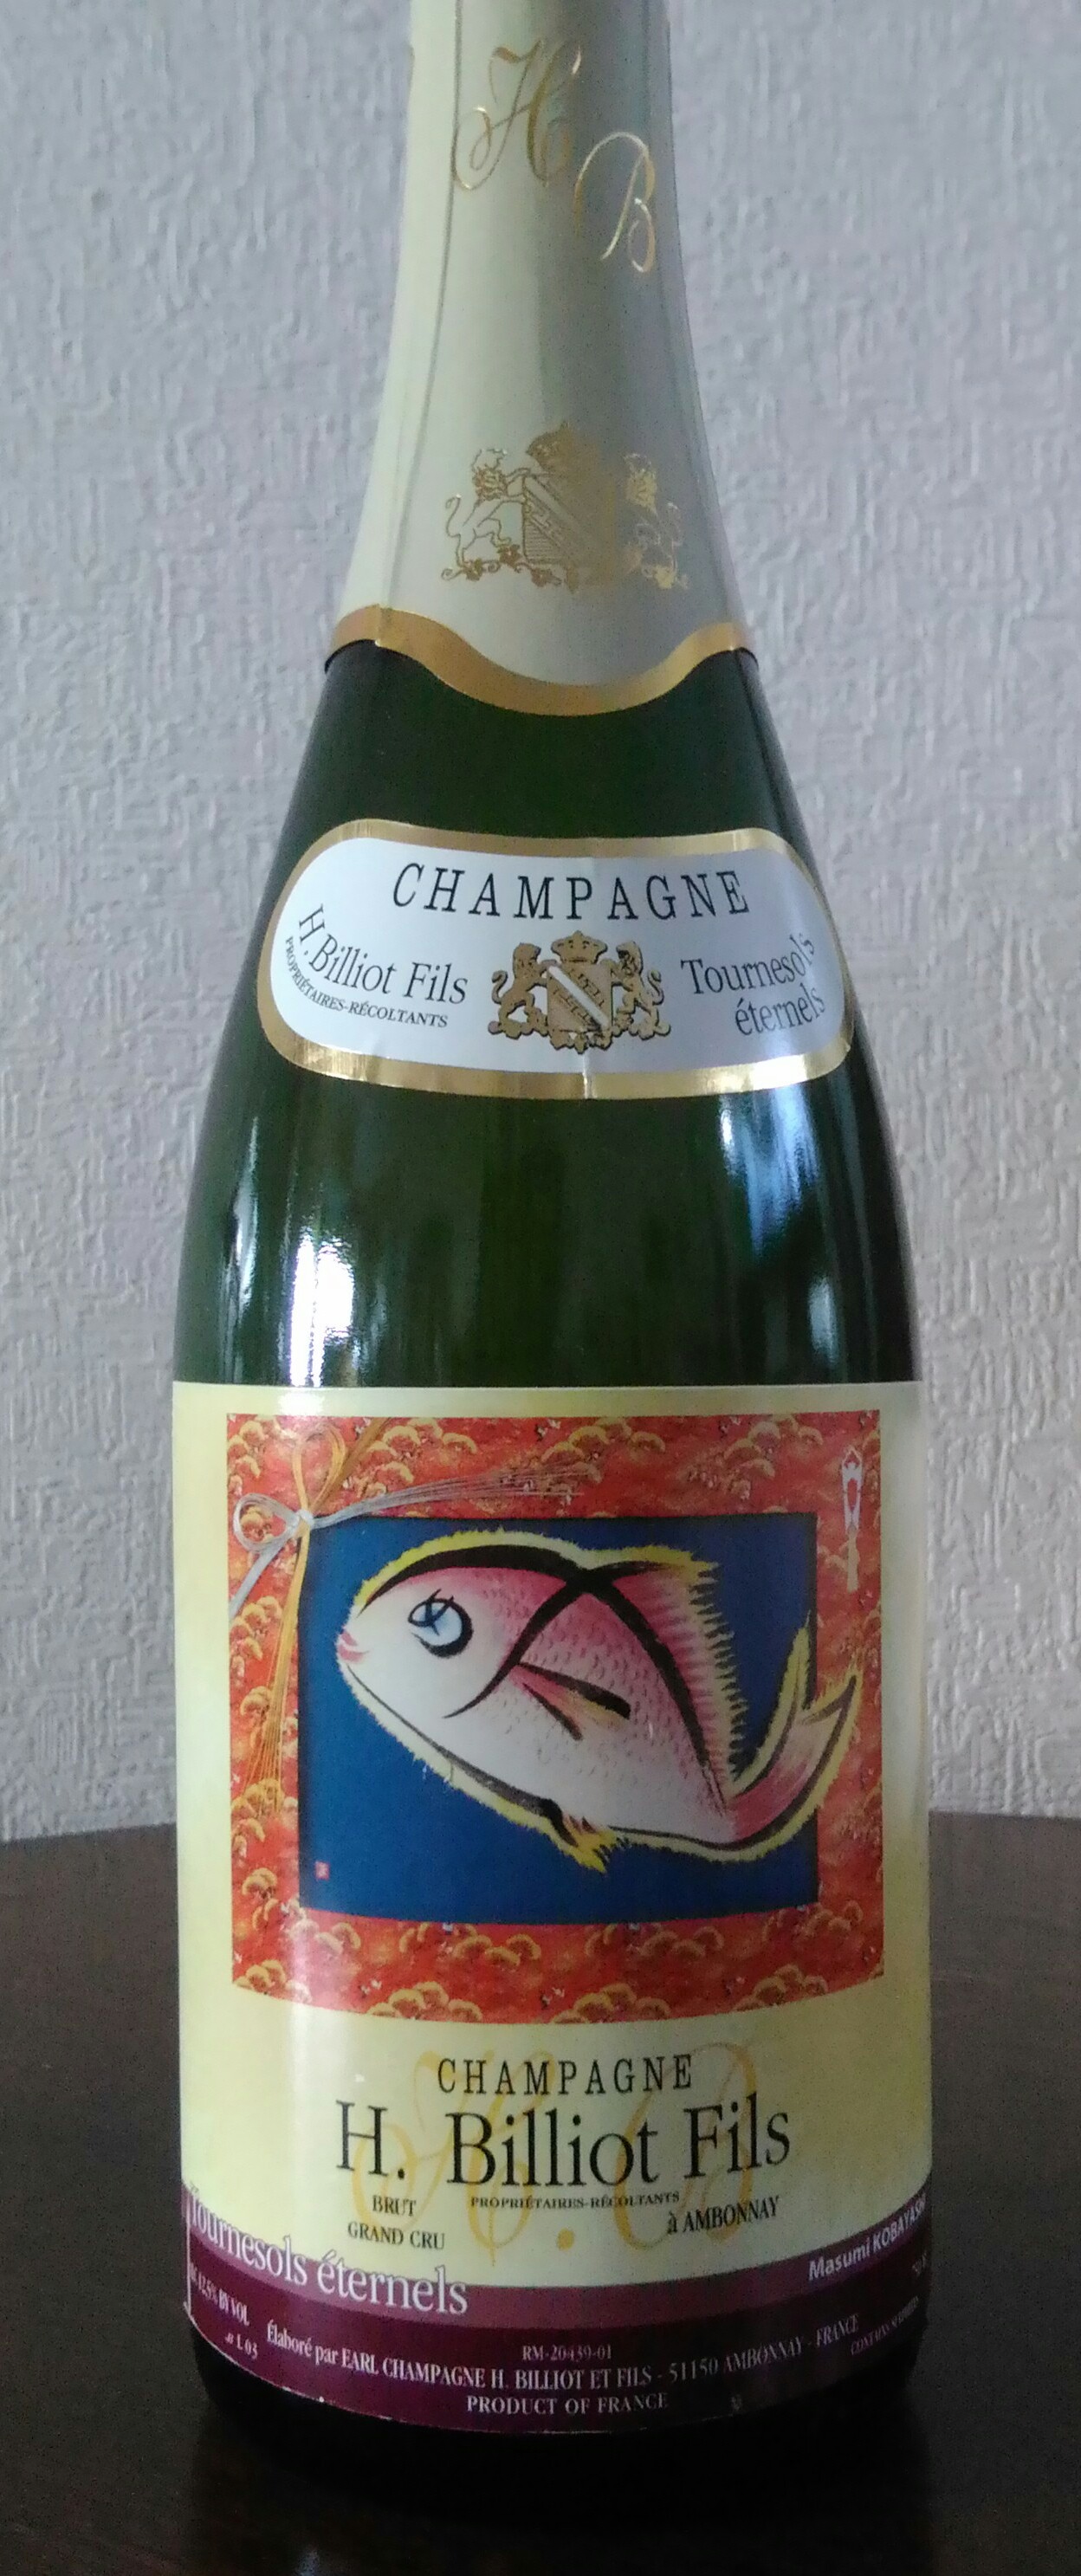 ゴッホ生誕160周年記念シャンパン芸術祭シャンパンラベル展